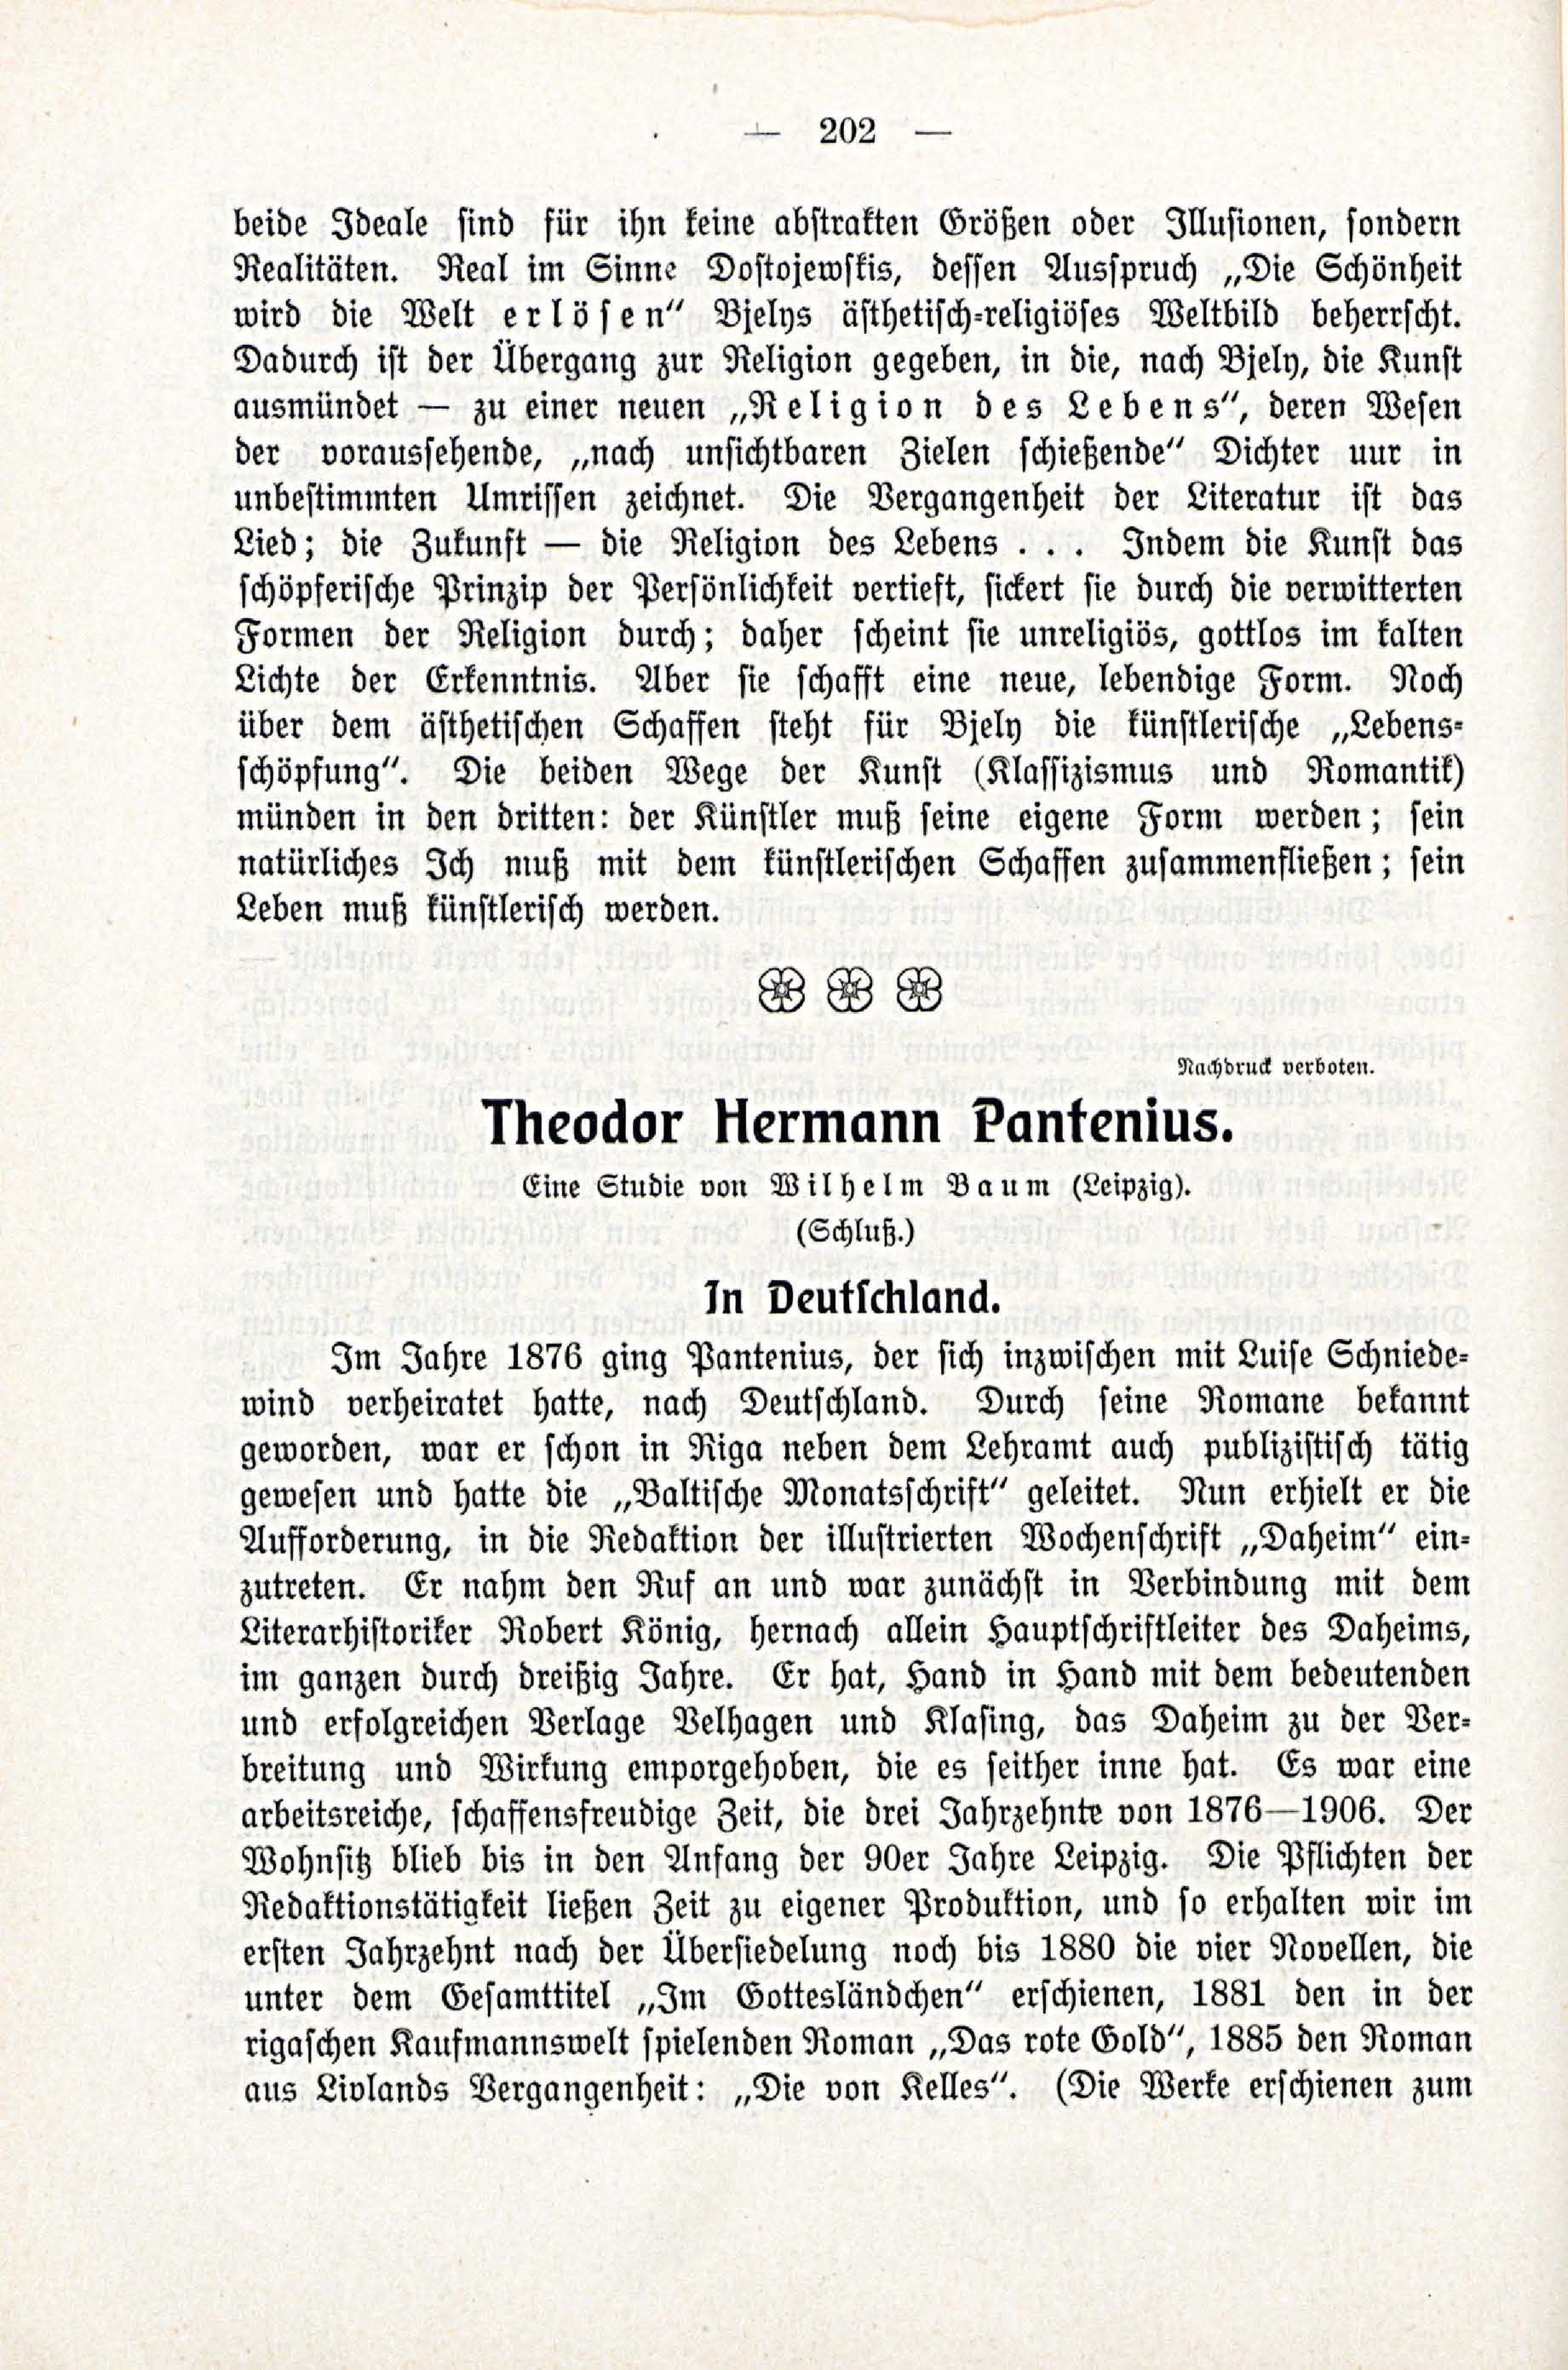 Deutsche Monatsschrift für Russland [3/03] (1914) | 48. (202) Main body of text